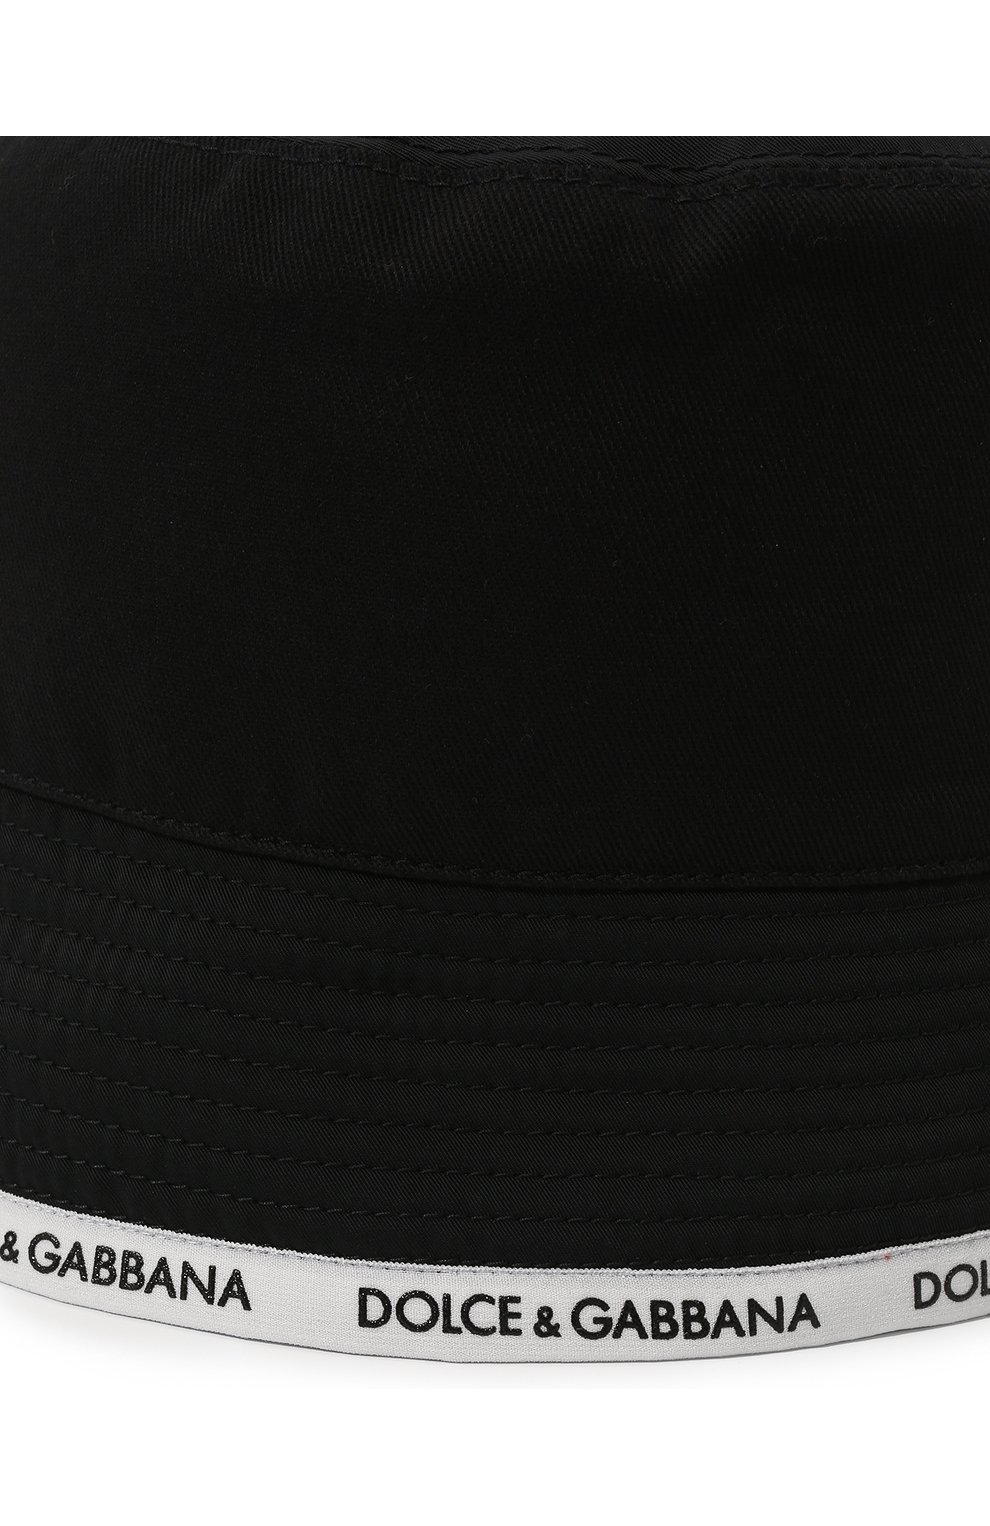 Мужская панама DOLCE & GABBANA черного цвета, арт. GH738A/GEX38 | Фото 4 (Материал: Текстиль, Синтетический материал, Хлопок)